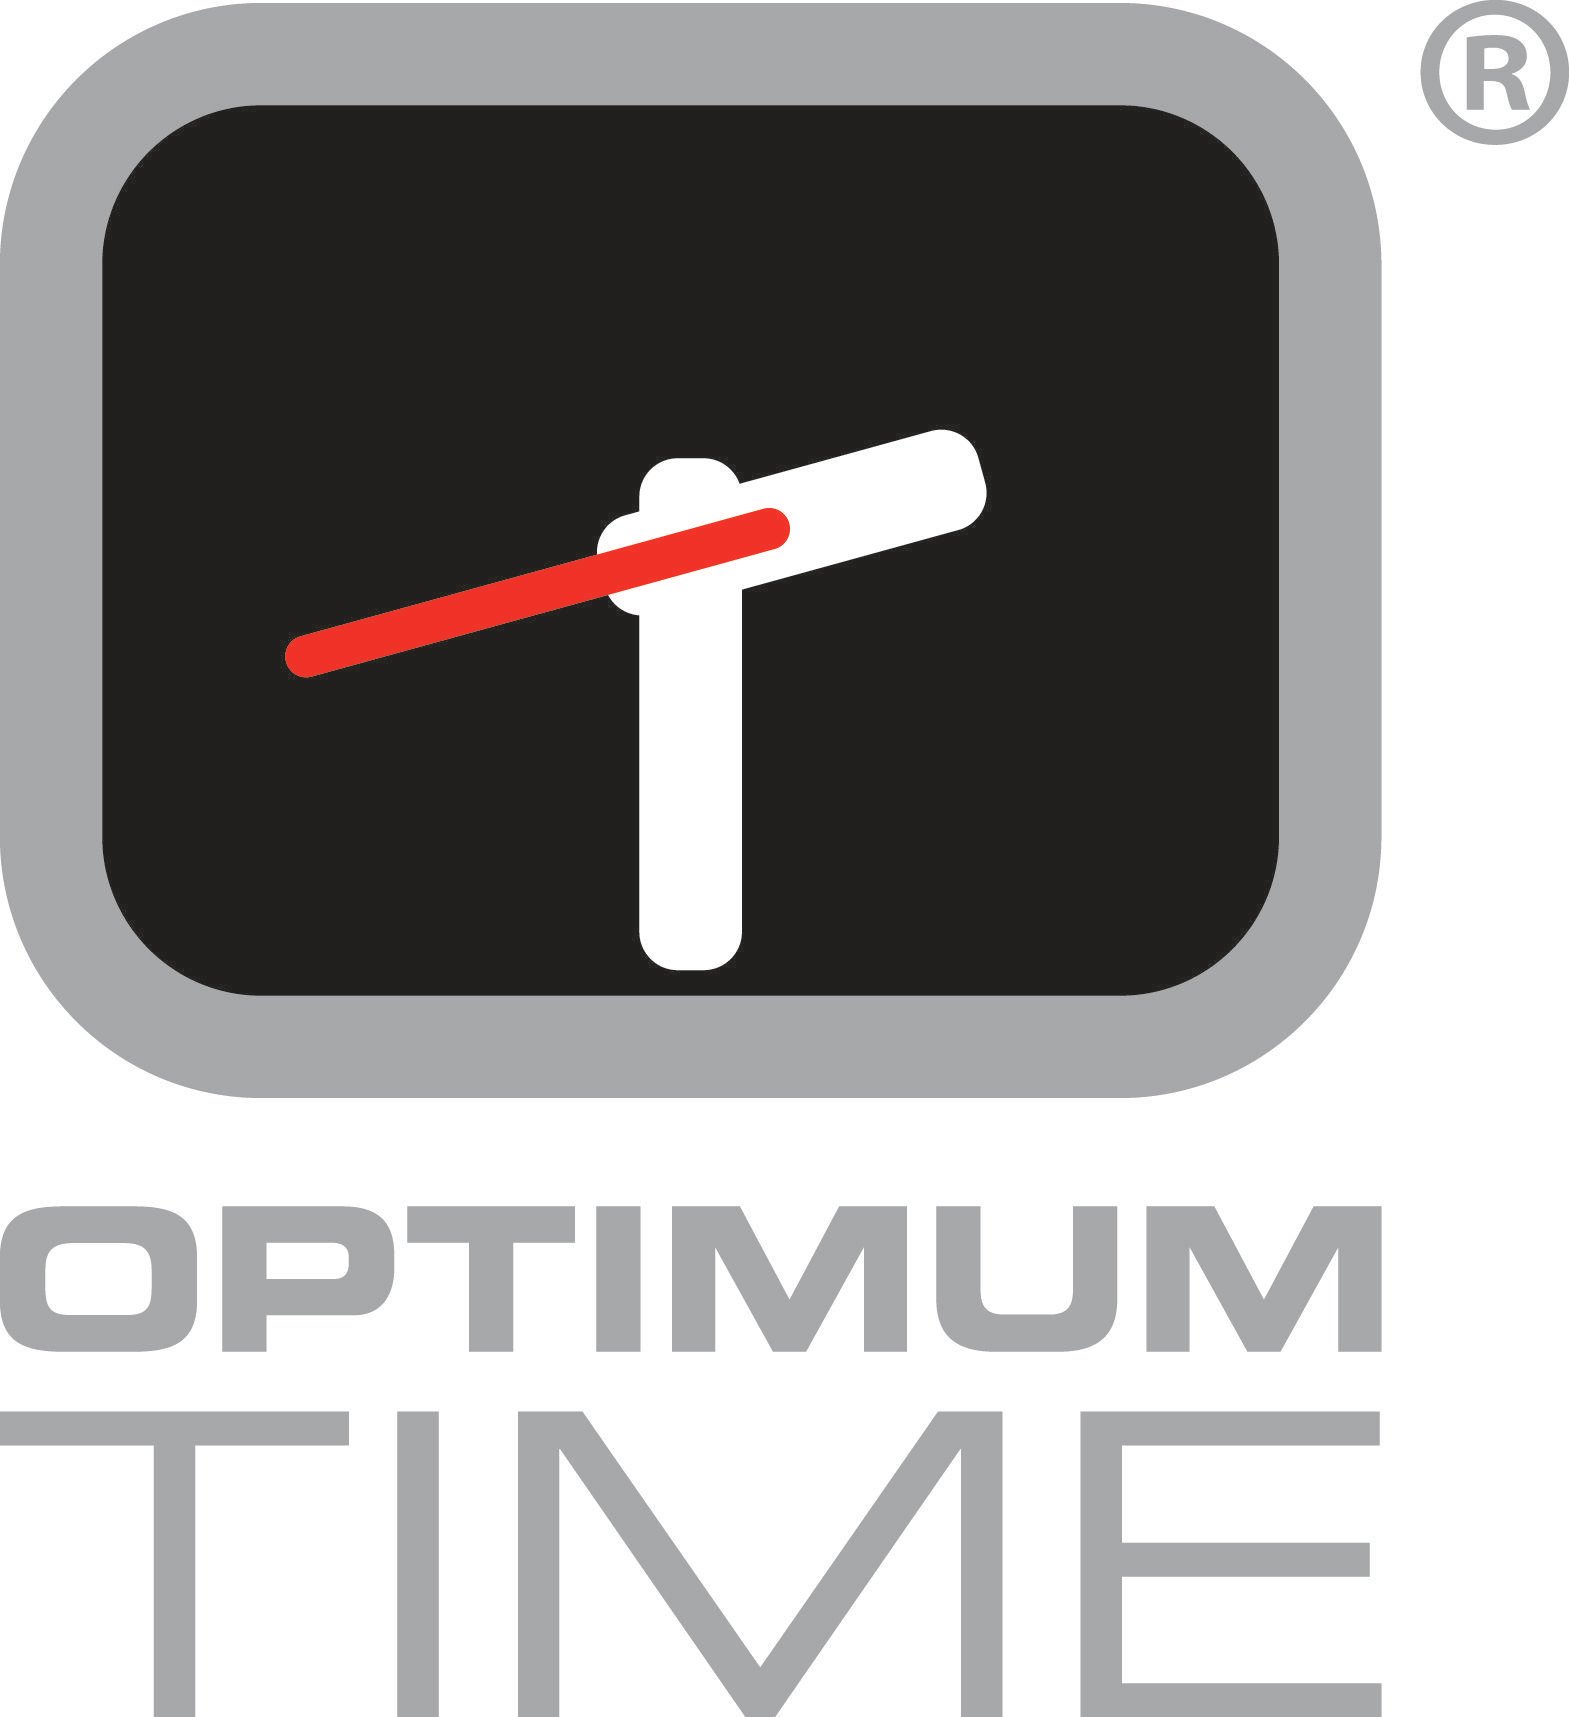 Google Time Logo - Optimum Time | Resource Downloads